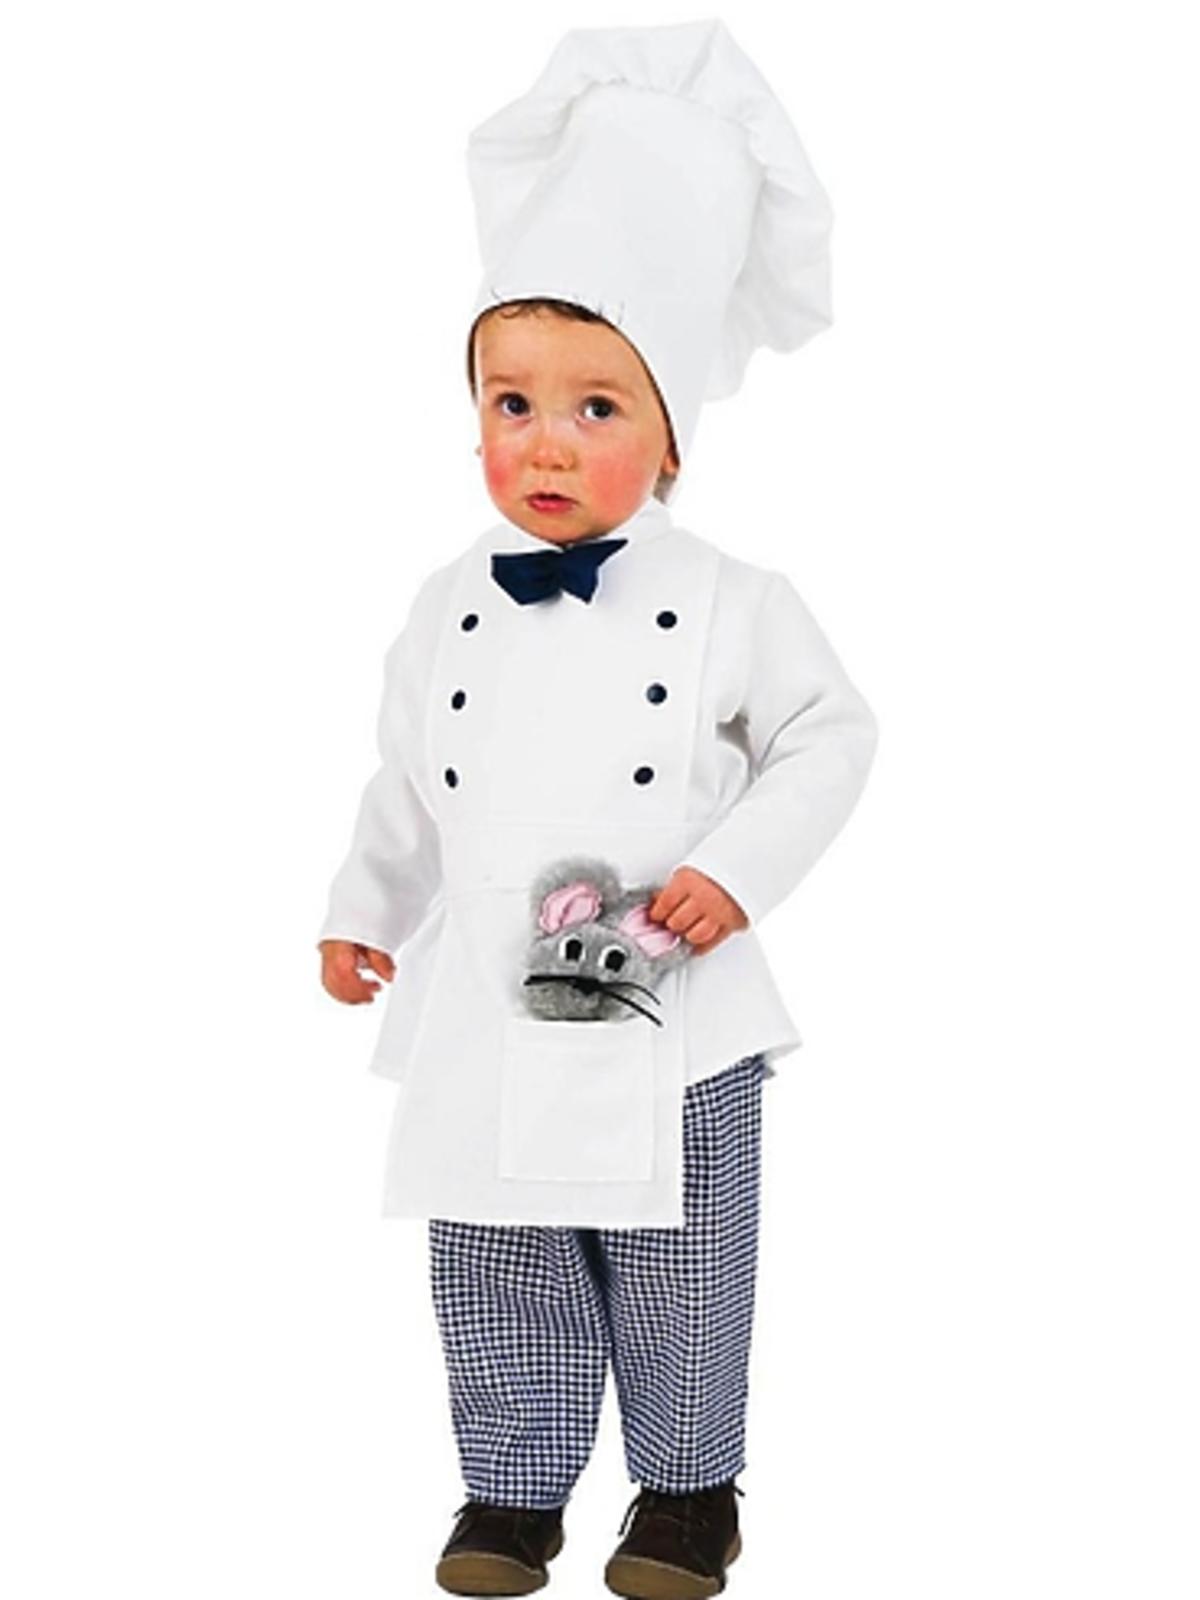 kostium-kucharz-dla-dziecka-169-99zl-funidelia.jpg